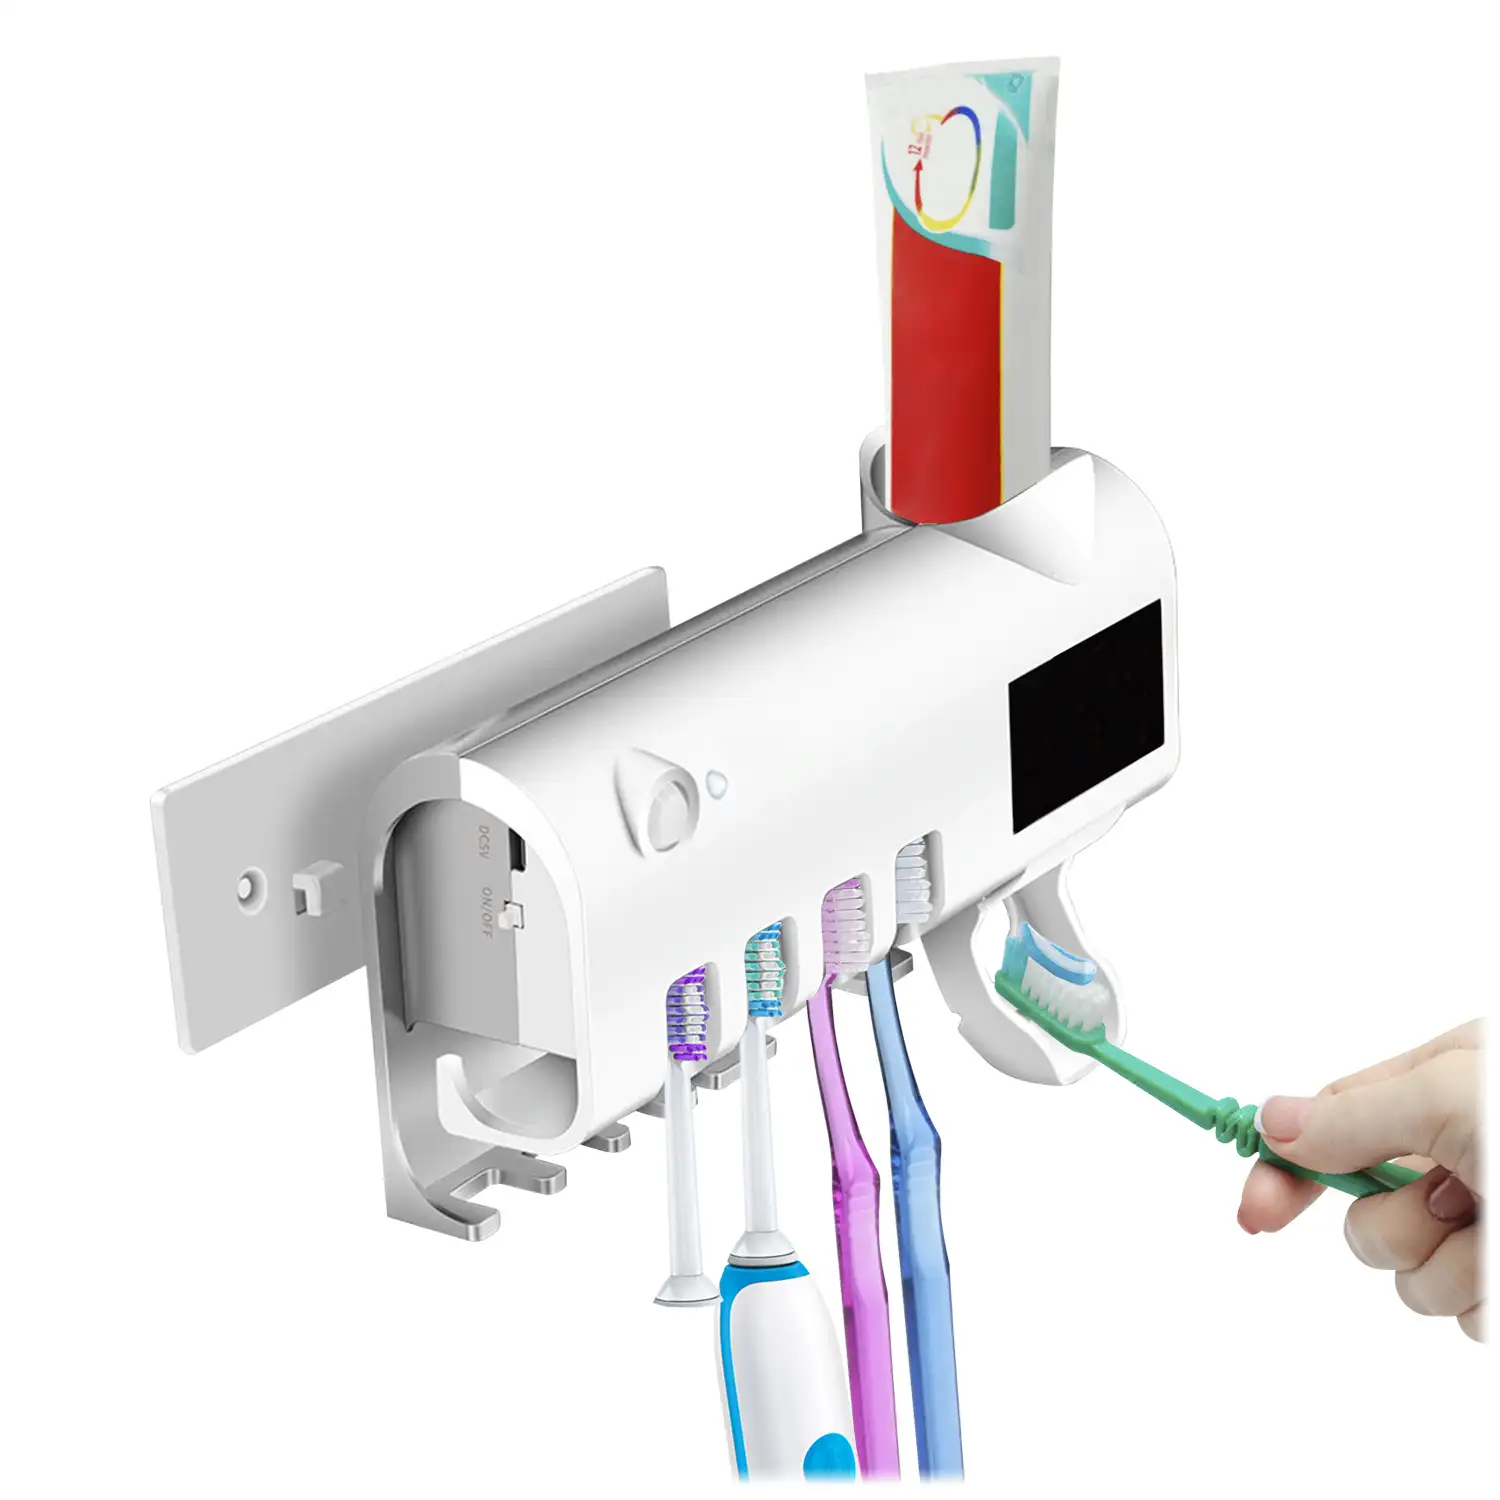 Esterilizador y soporte para 4 cepillos de dientes con dispensador de pasta dental. Panel solar.